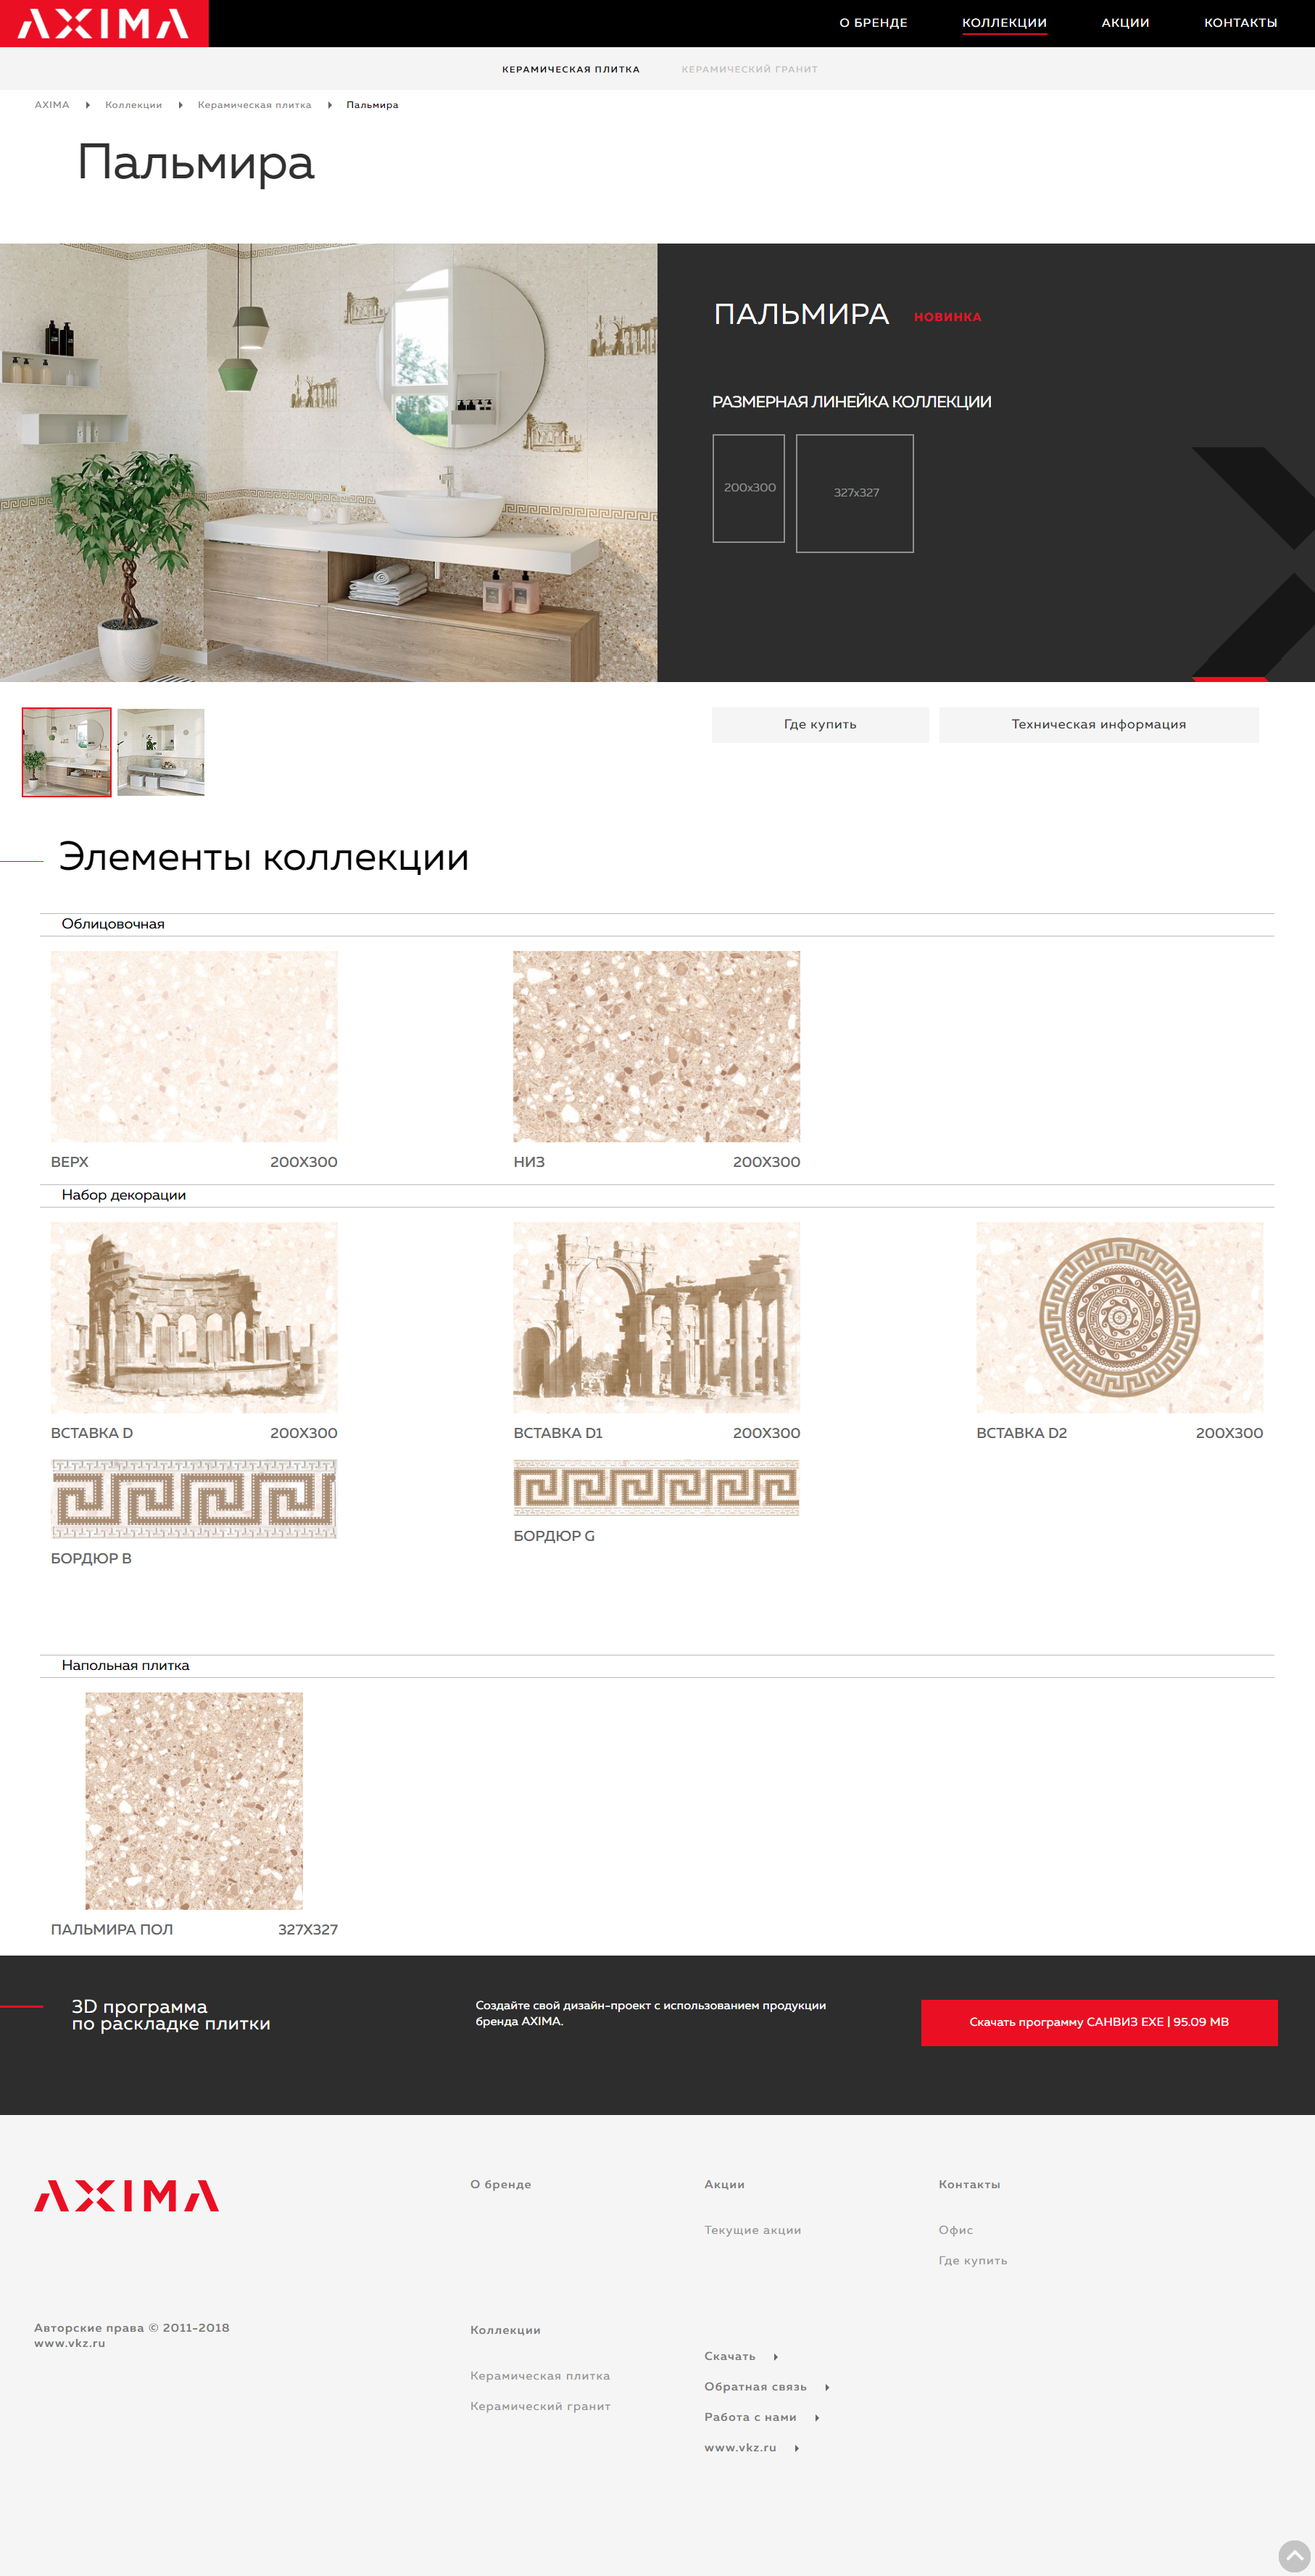 сайт бренда axima — керамическая плитка и керамогранит